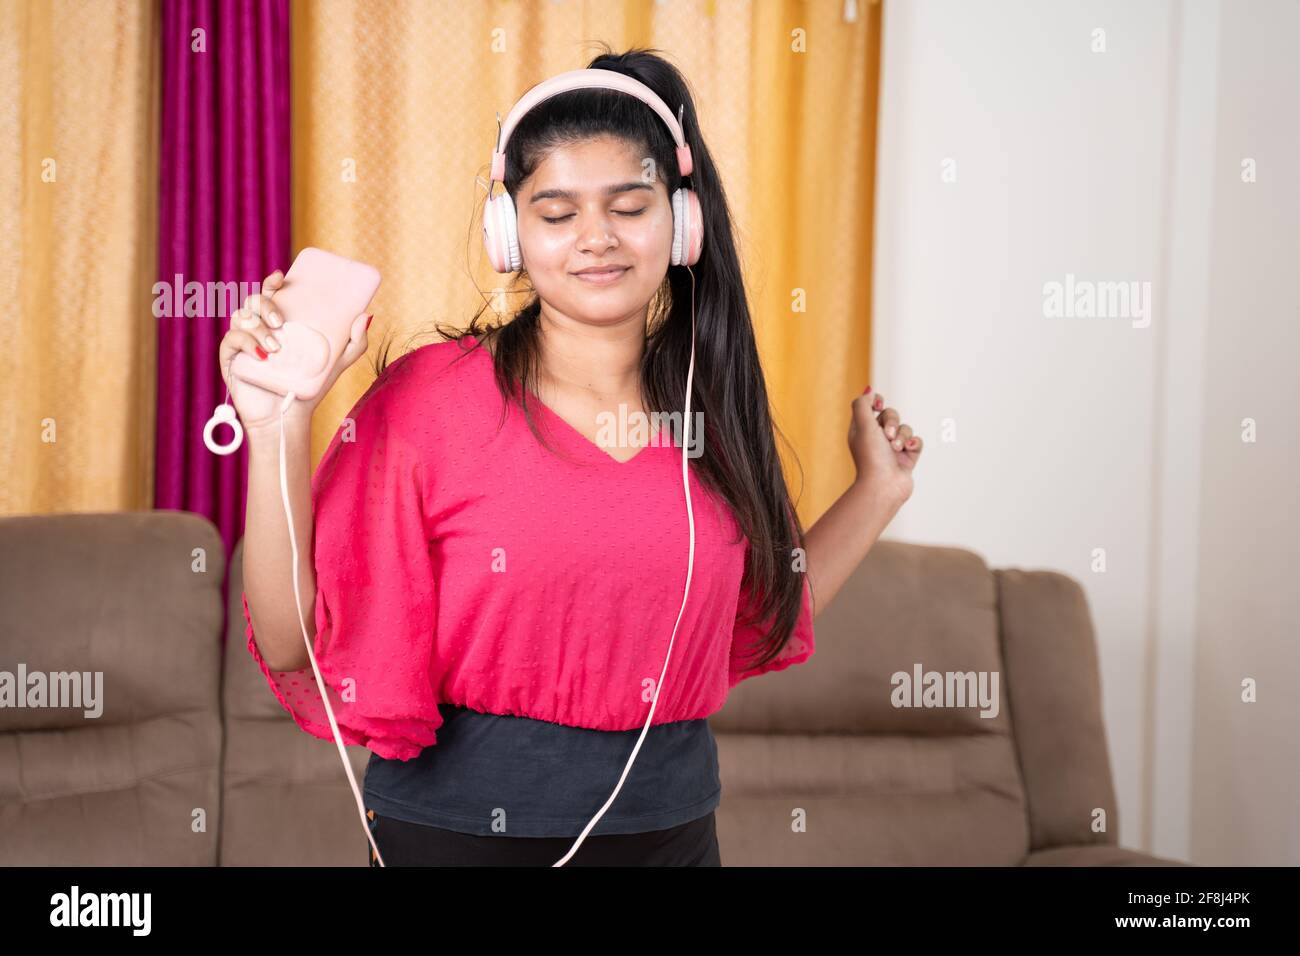 Medium Schuss von jungen Mädchen tanzen durch Musik hören von Kopfhörern an mobile nach dem Training im Wohnzimmer verbunden - Konzept der Entspannung, fröhlich Stockfoto